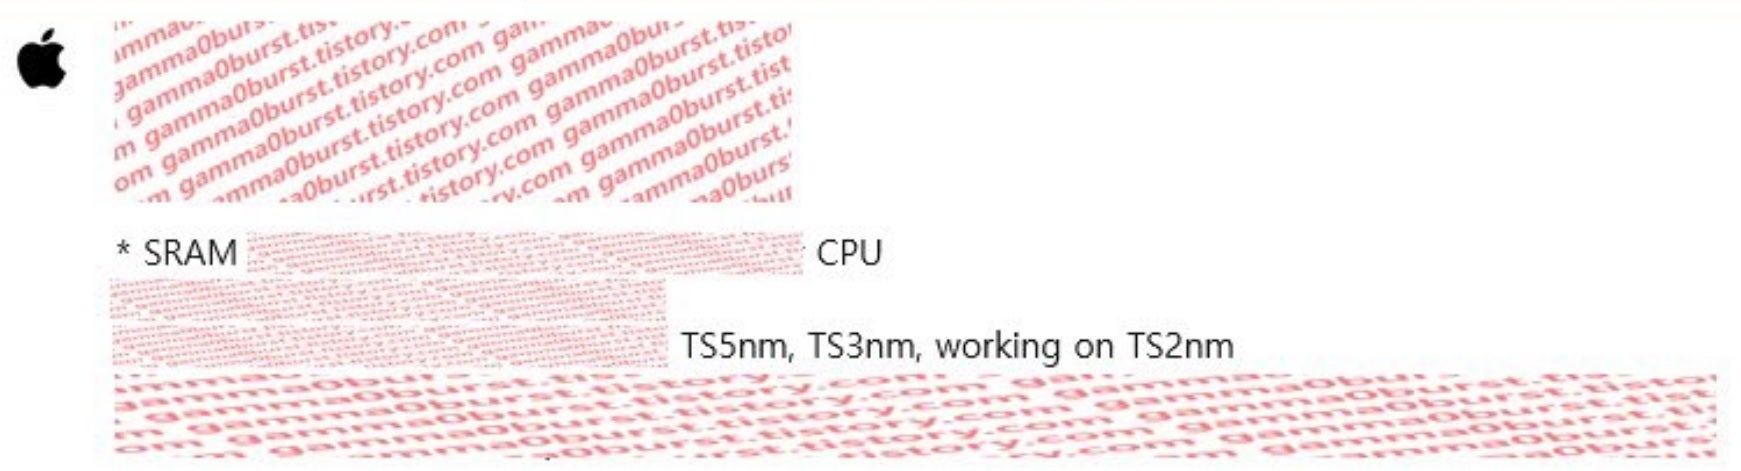 Une diapositive fortement expurgée montre qu'Apple conçoit des chipsets 2 nm - Apple a commencé à concevoir des puces 2 nm pour les futurs modèles d'iPhone